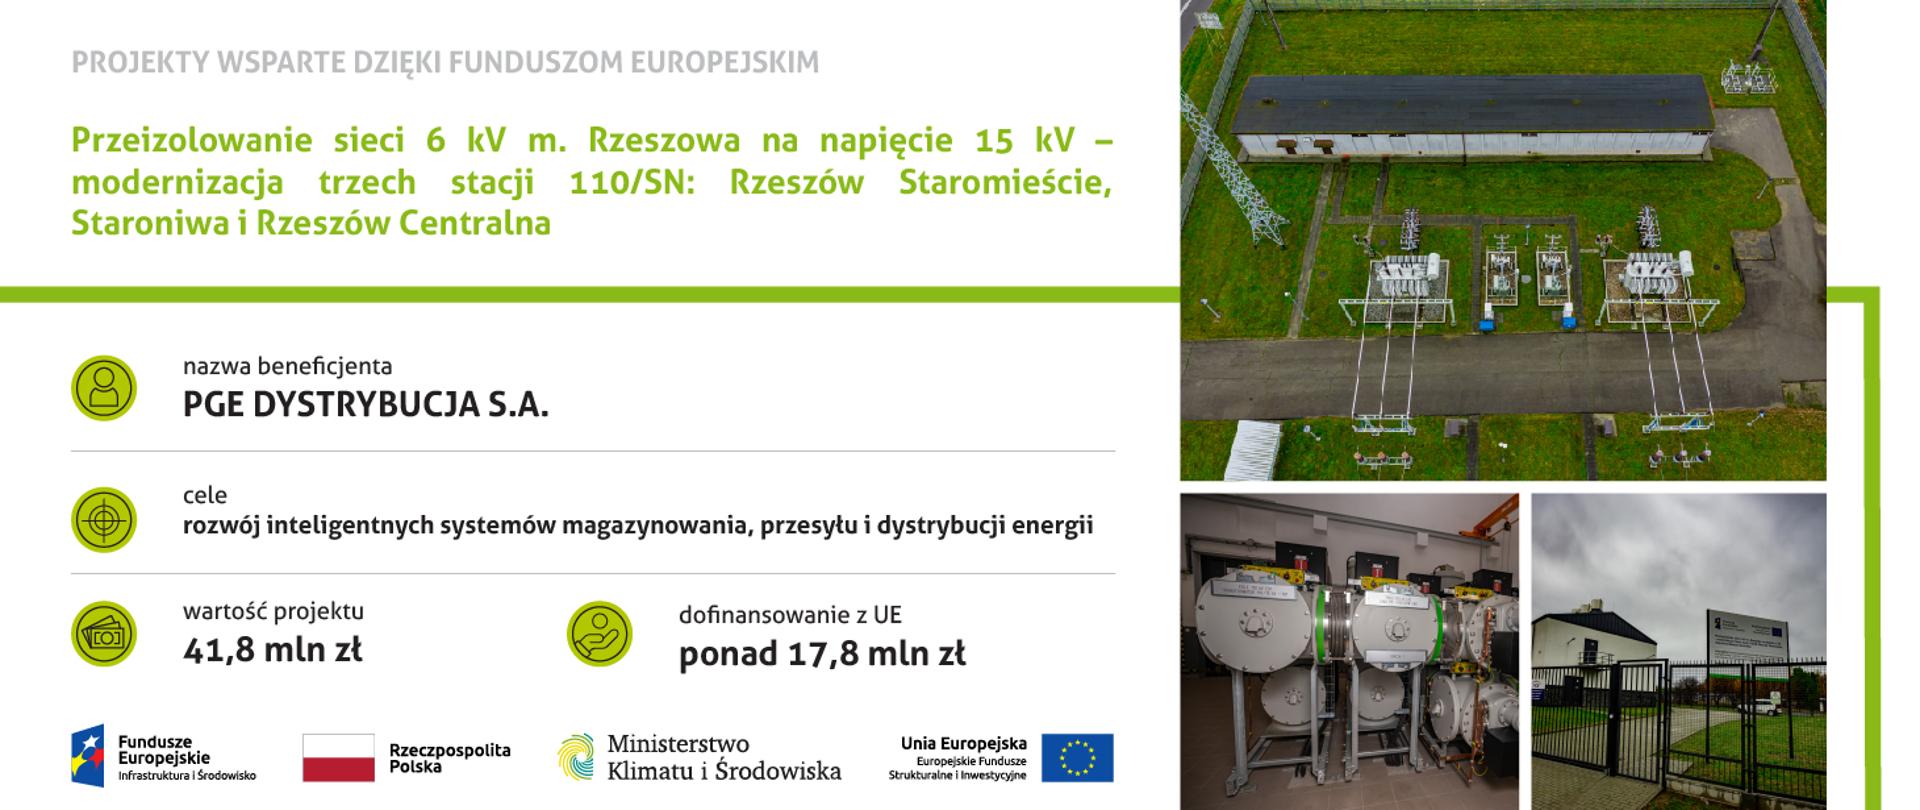 Przeizolowanie sieci 6 kV m. Rzeszowa na napięcie 15 kV – modernizacja trzech stacji 110/SN: Rzeszów Staromieście, Staroniwa i Rzeszów Centralna